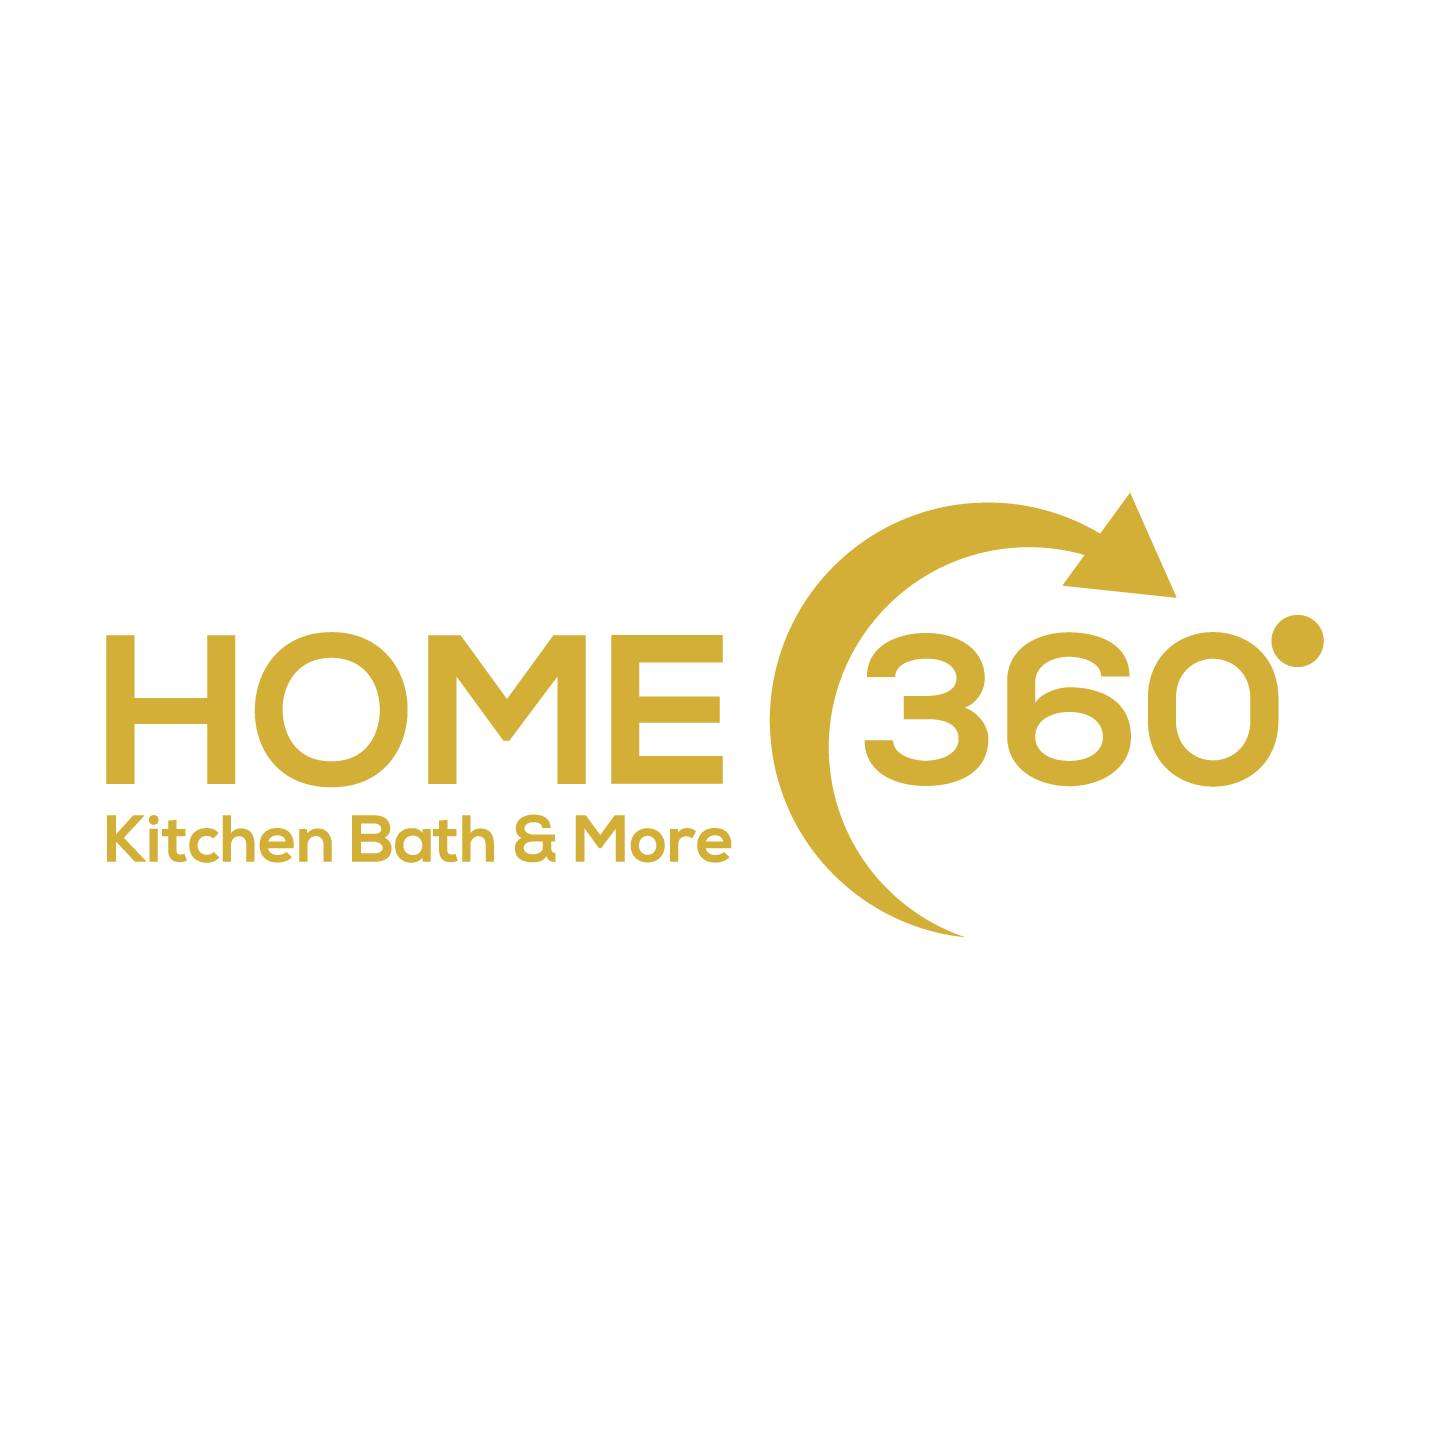 Home 360 Kitchen Bath & More Logo